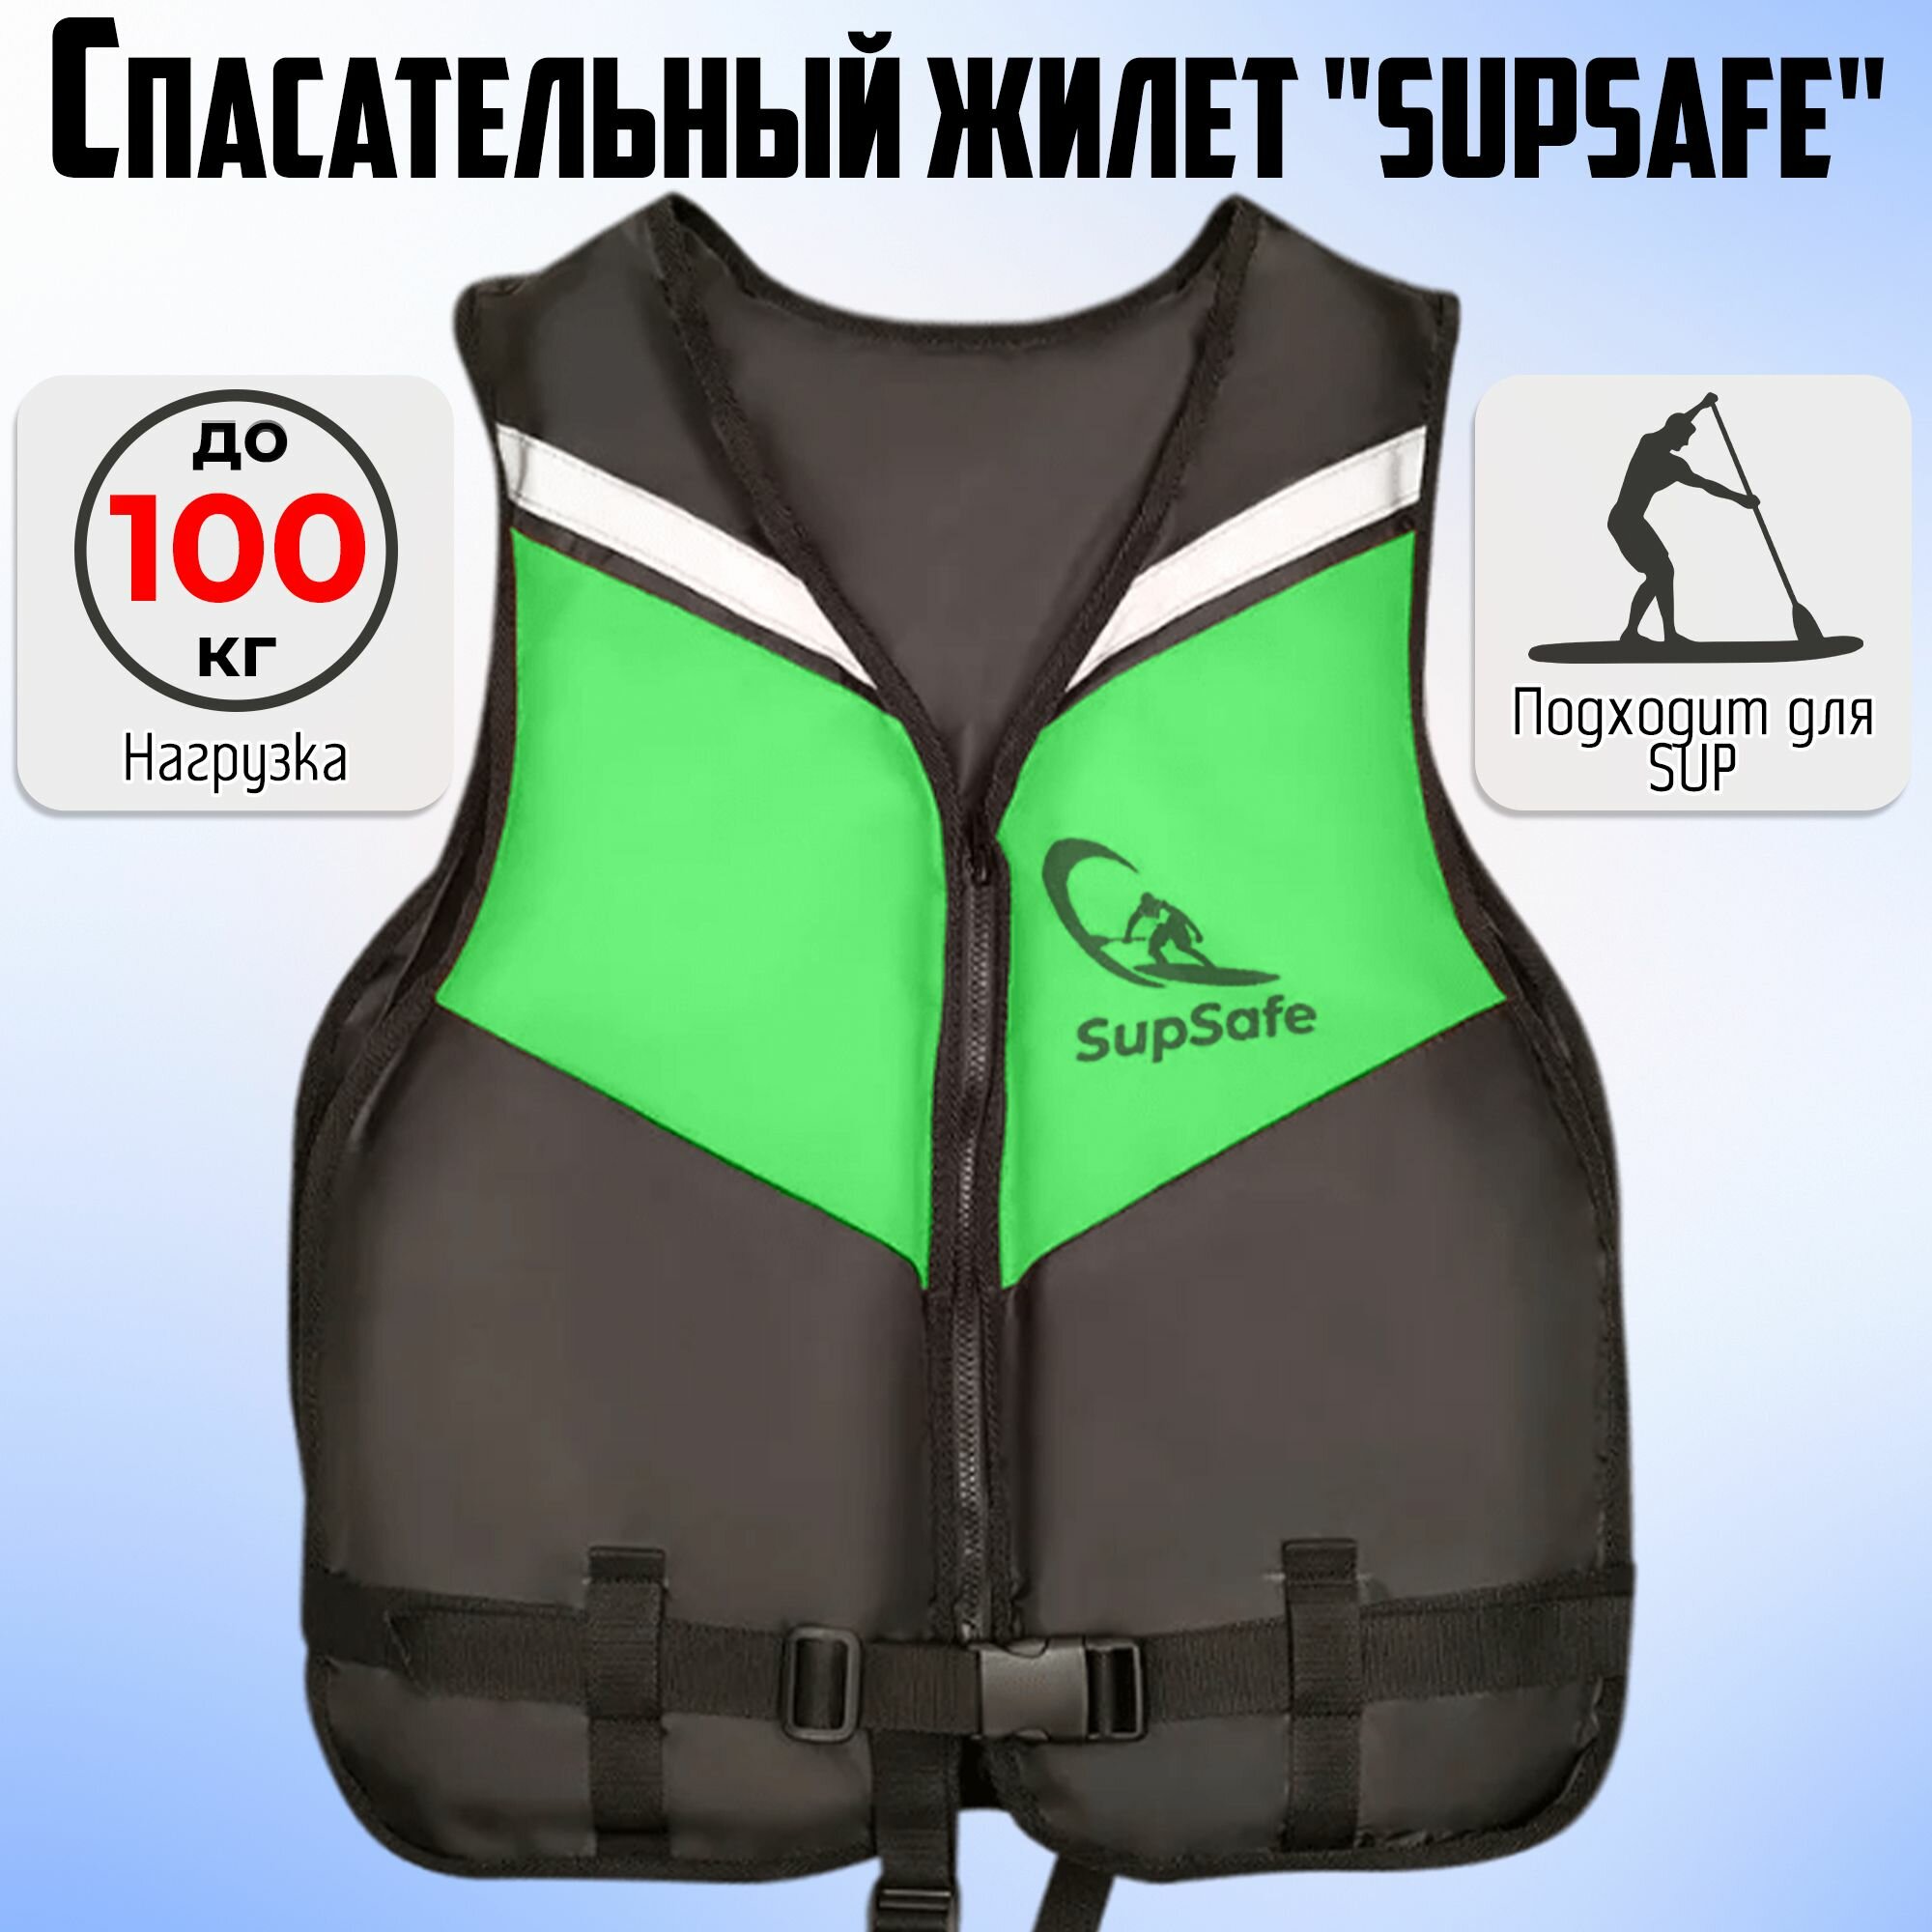 Спасательный жилет SupSafe до 100 кг, 50-52 черный; зеленый